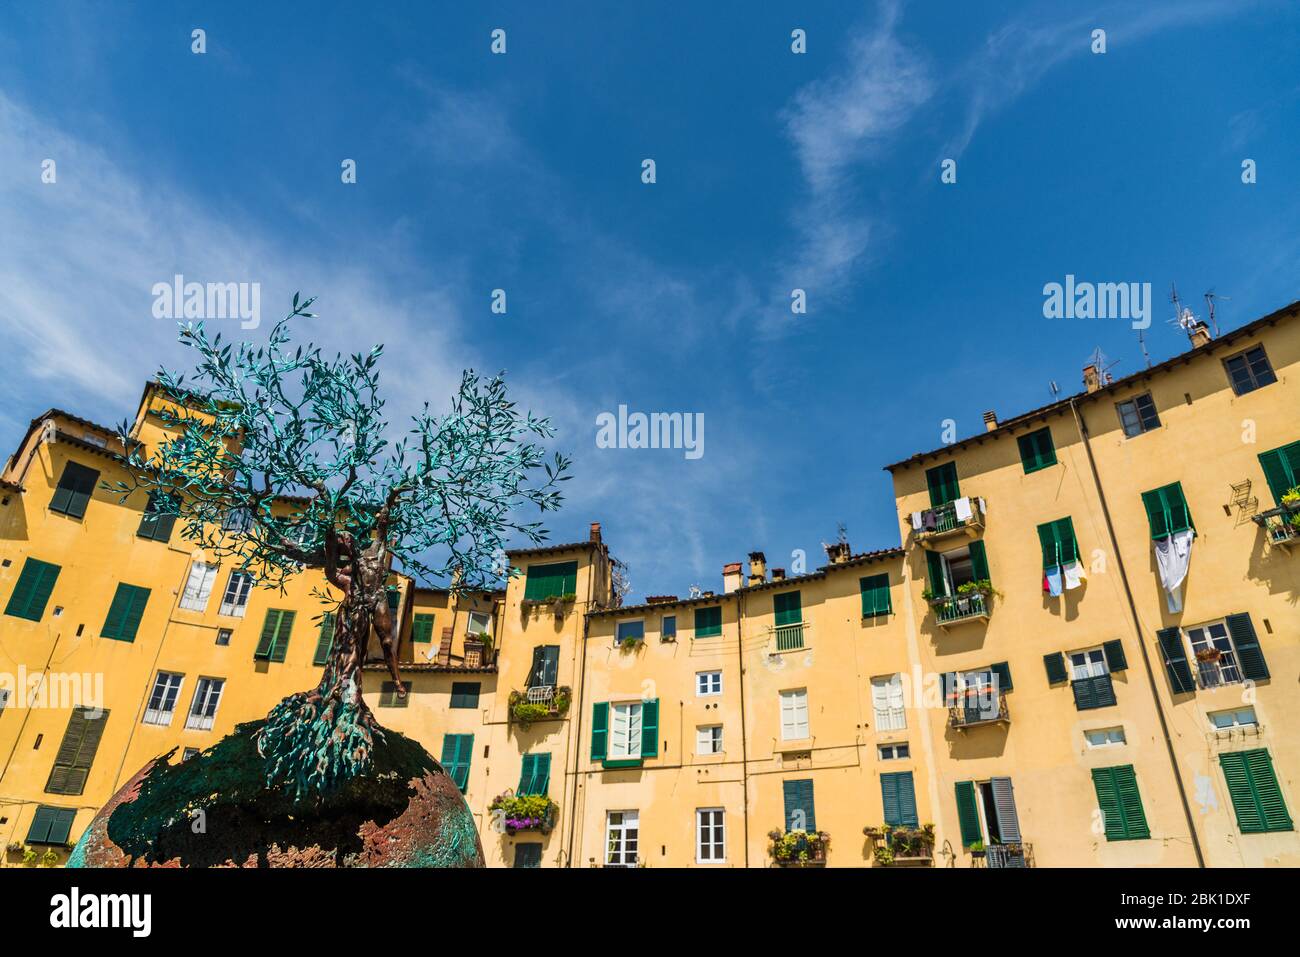 De nombreuses maisons traditionnelles colorées à l'ancienne architecture italienne. Banque D'Images